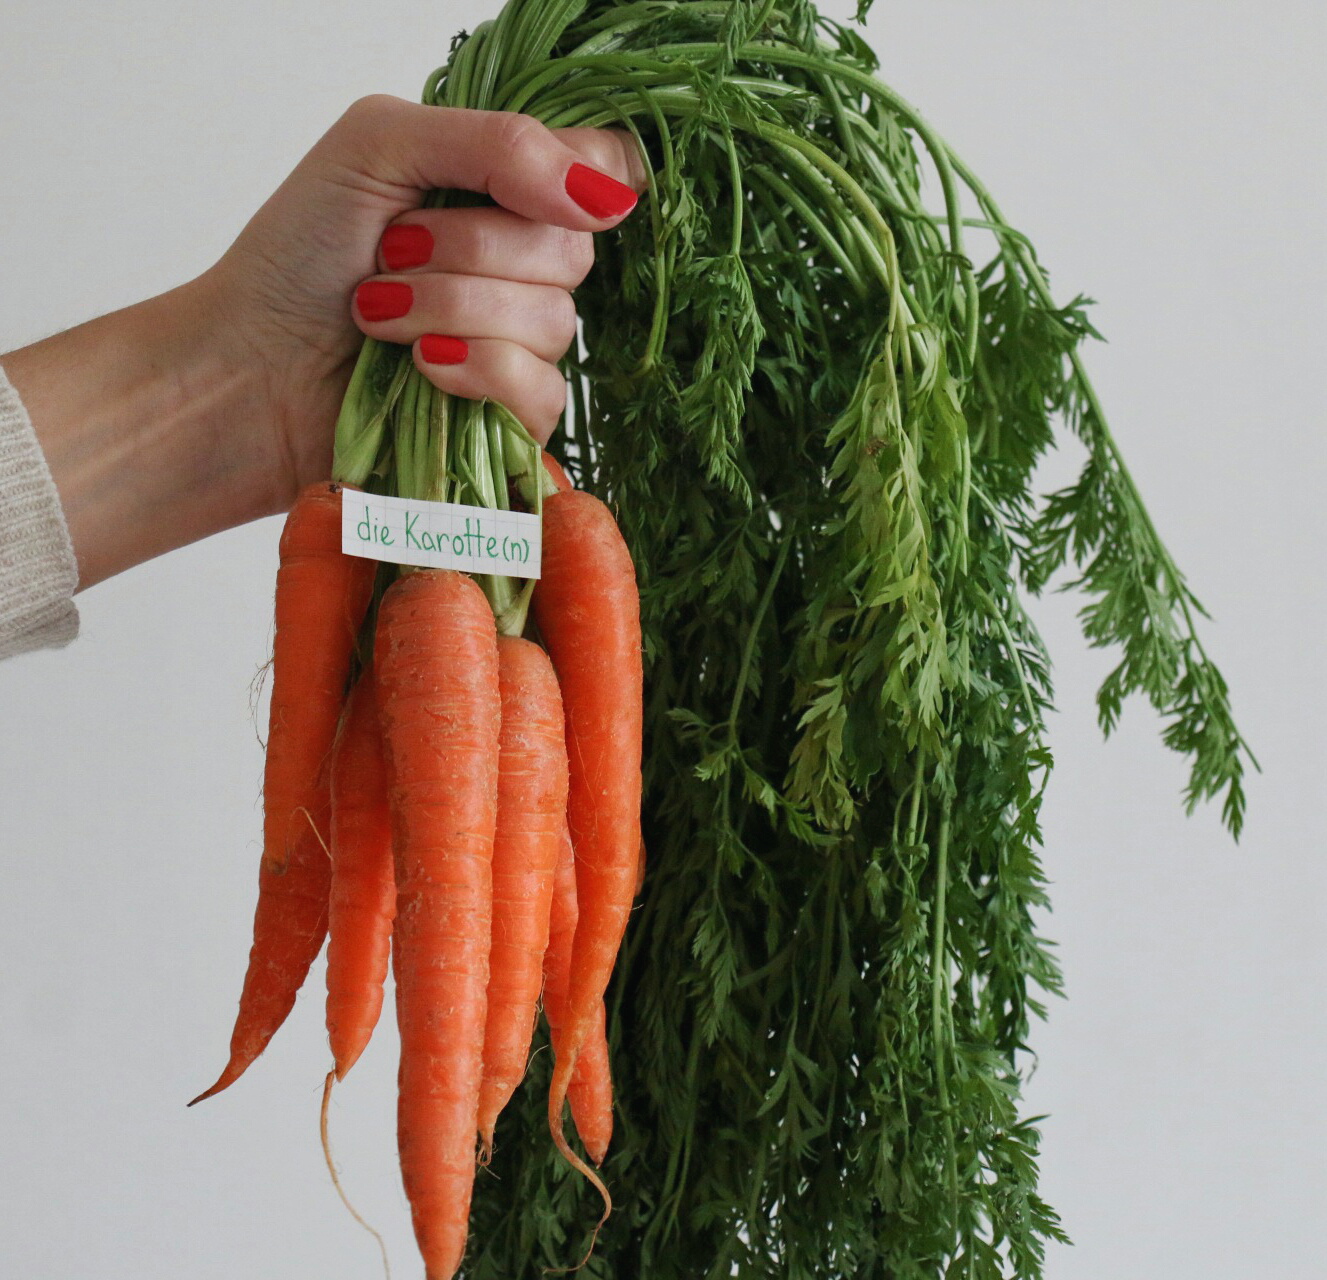 die Karotte - carrot